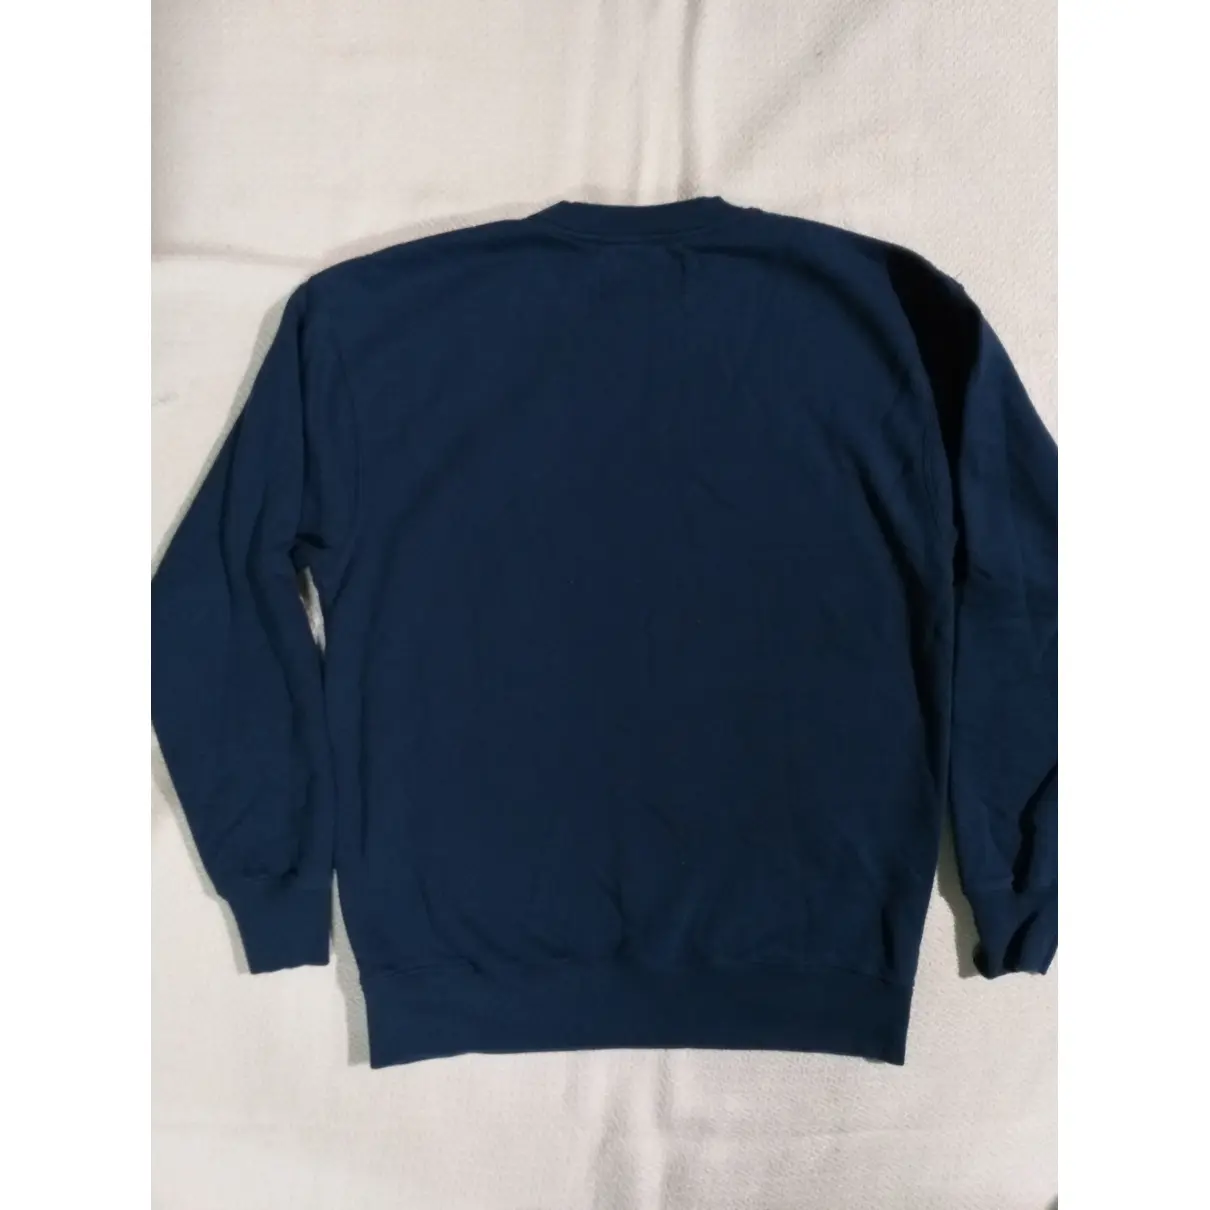 Buy Han Kjobenhavn Blue Cotton Knitwear & Sweatshirt online